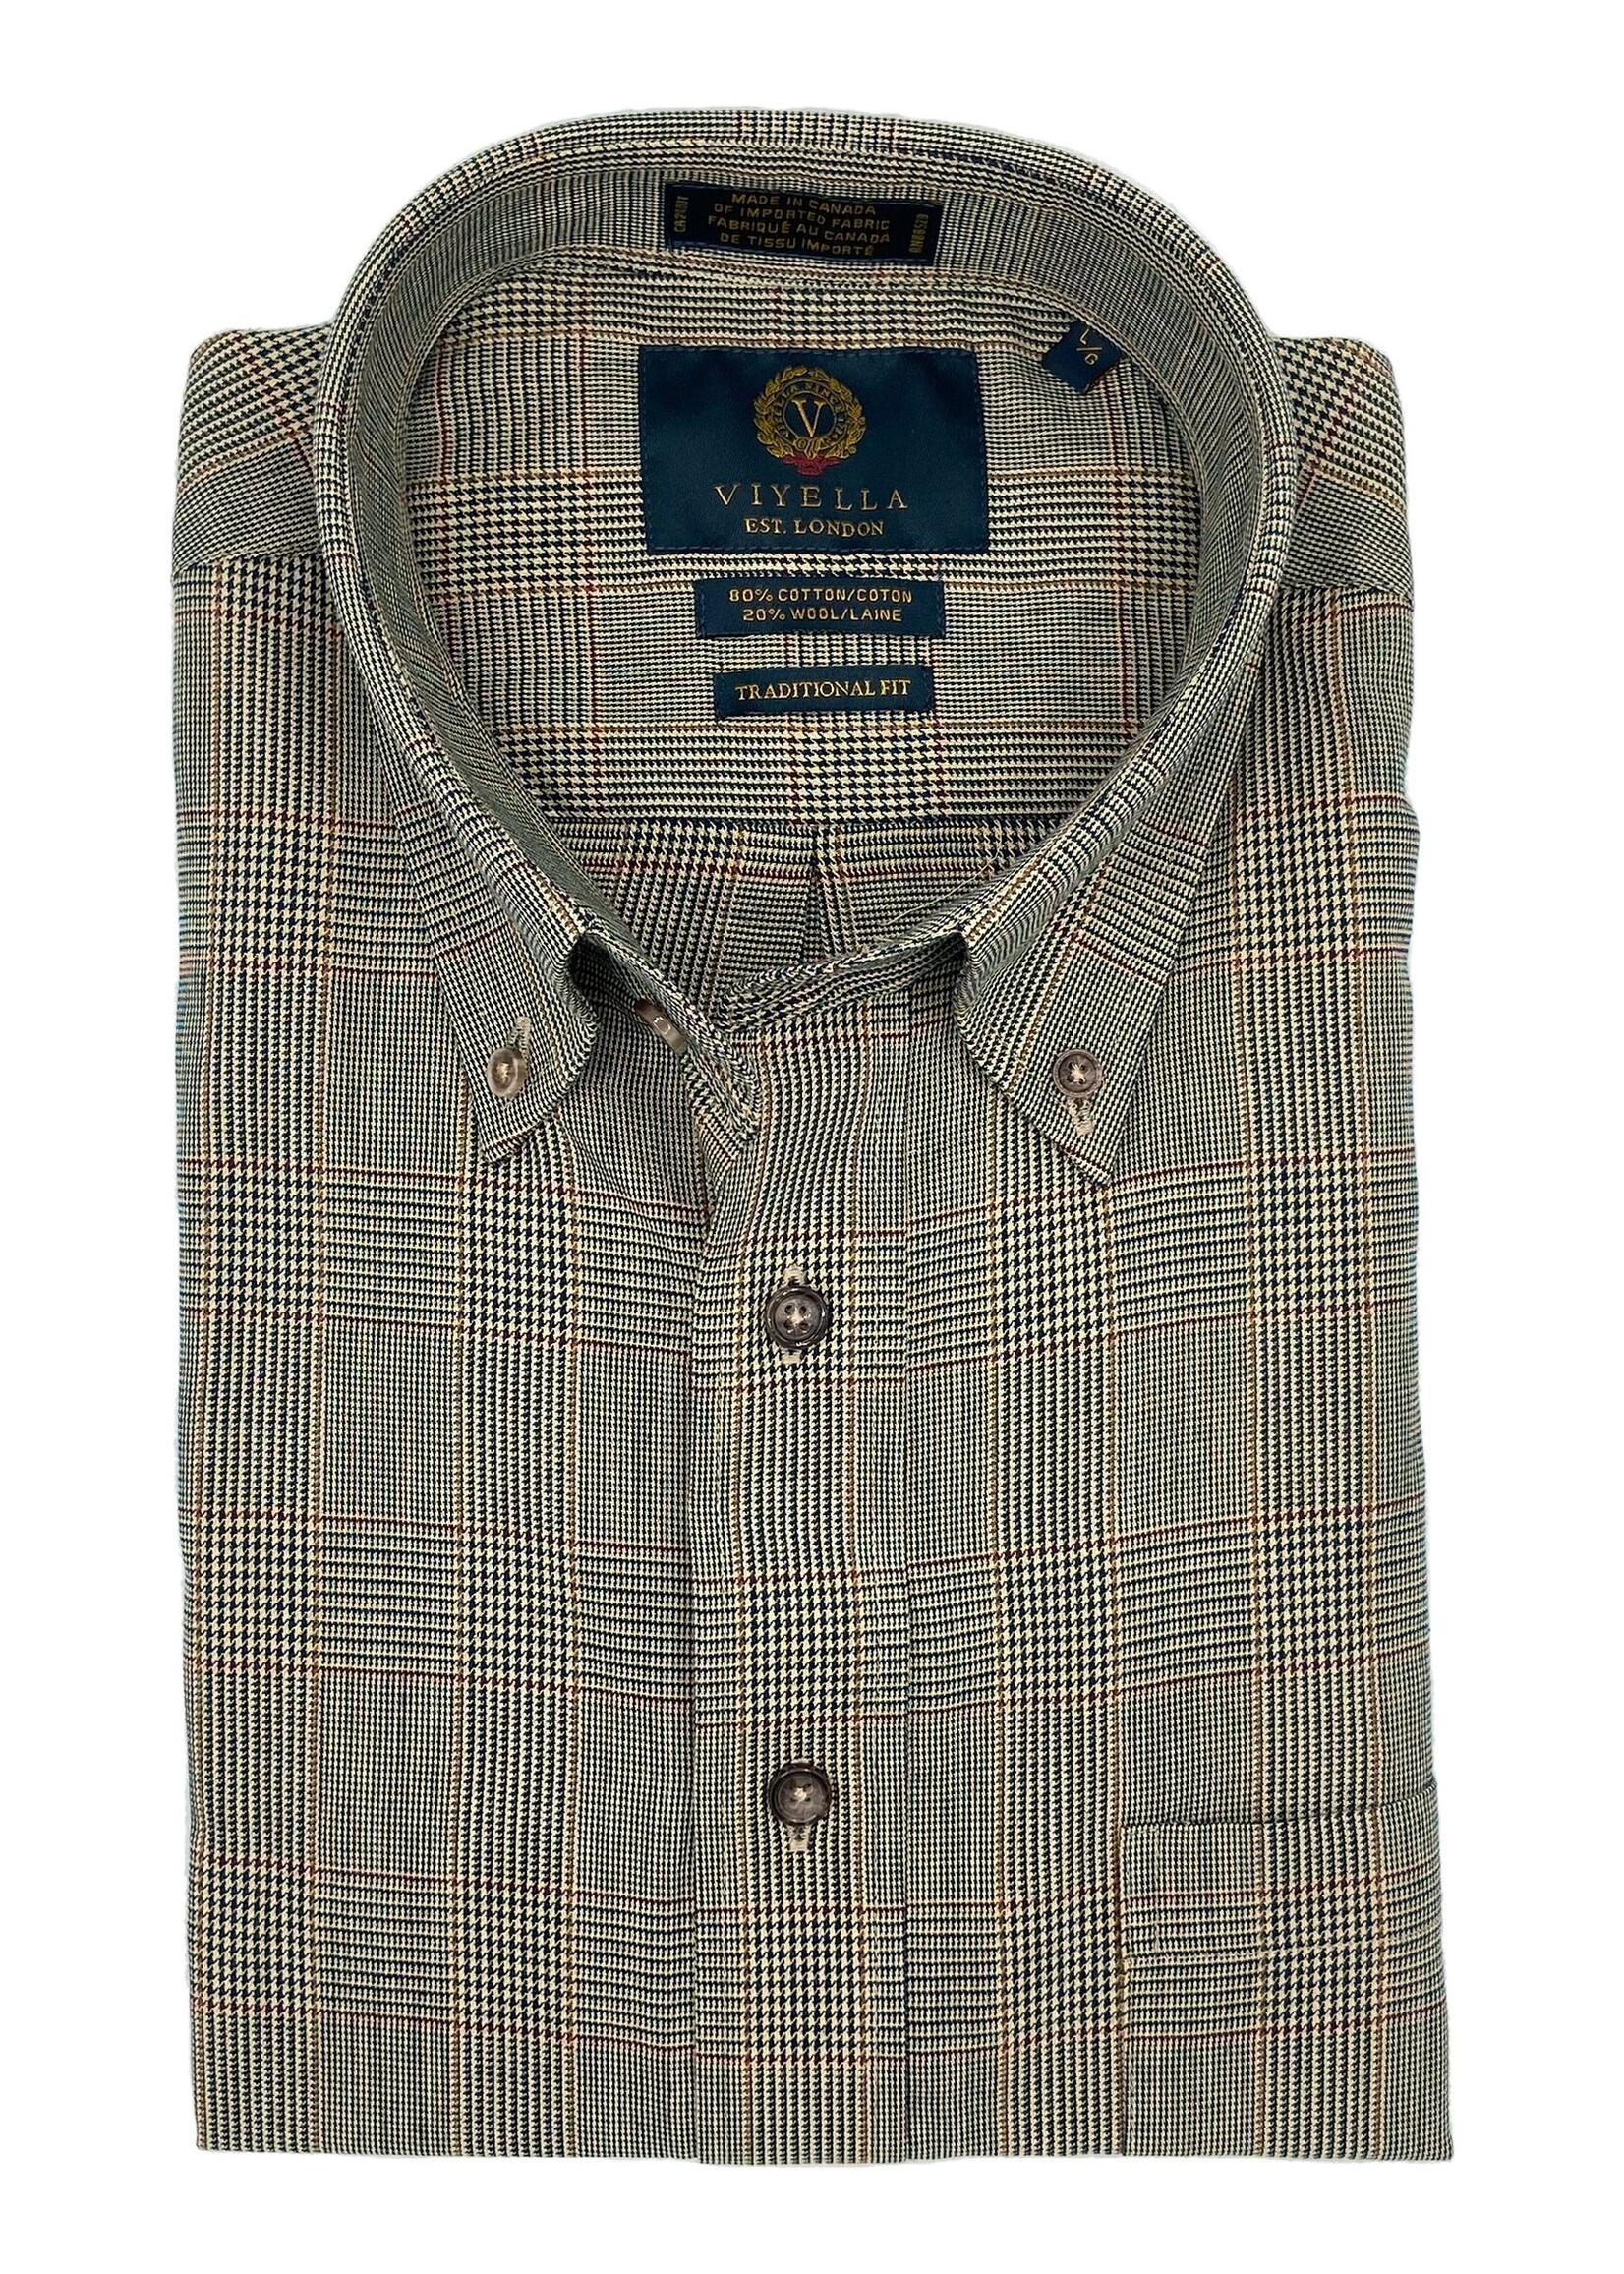 VIYELLA Viyella Taupe Made in Canada Button-Down Collar Sport Shirt